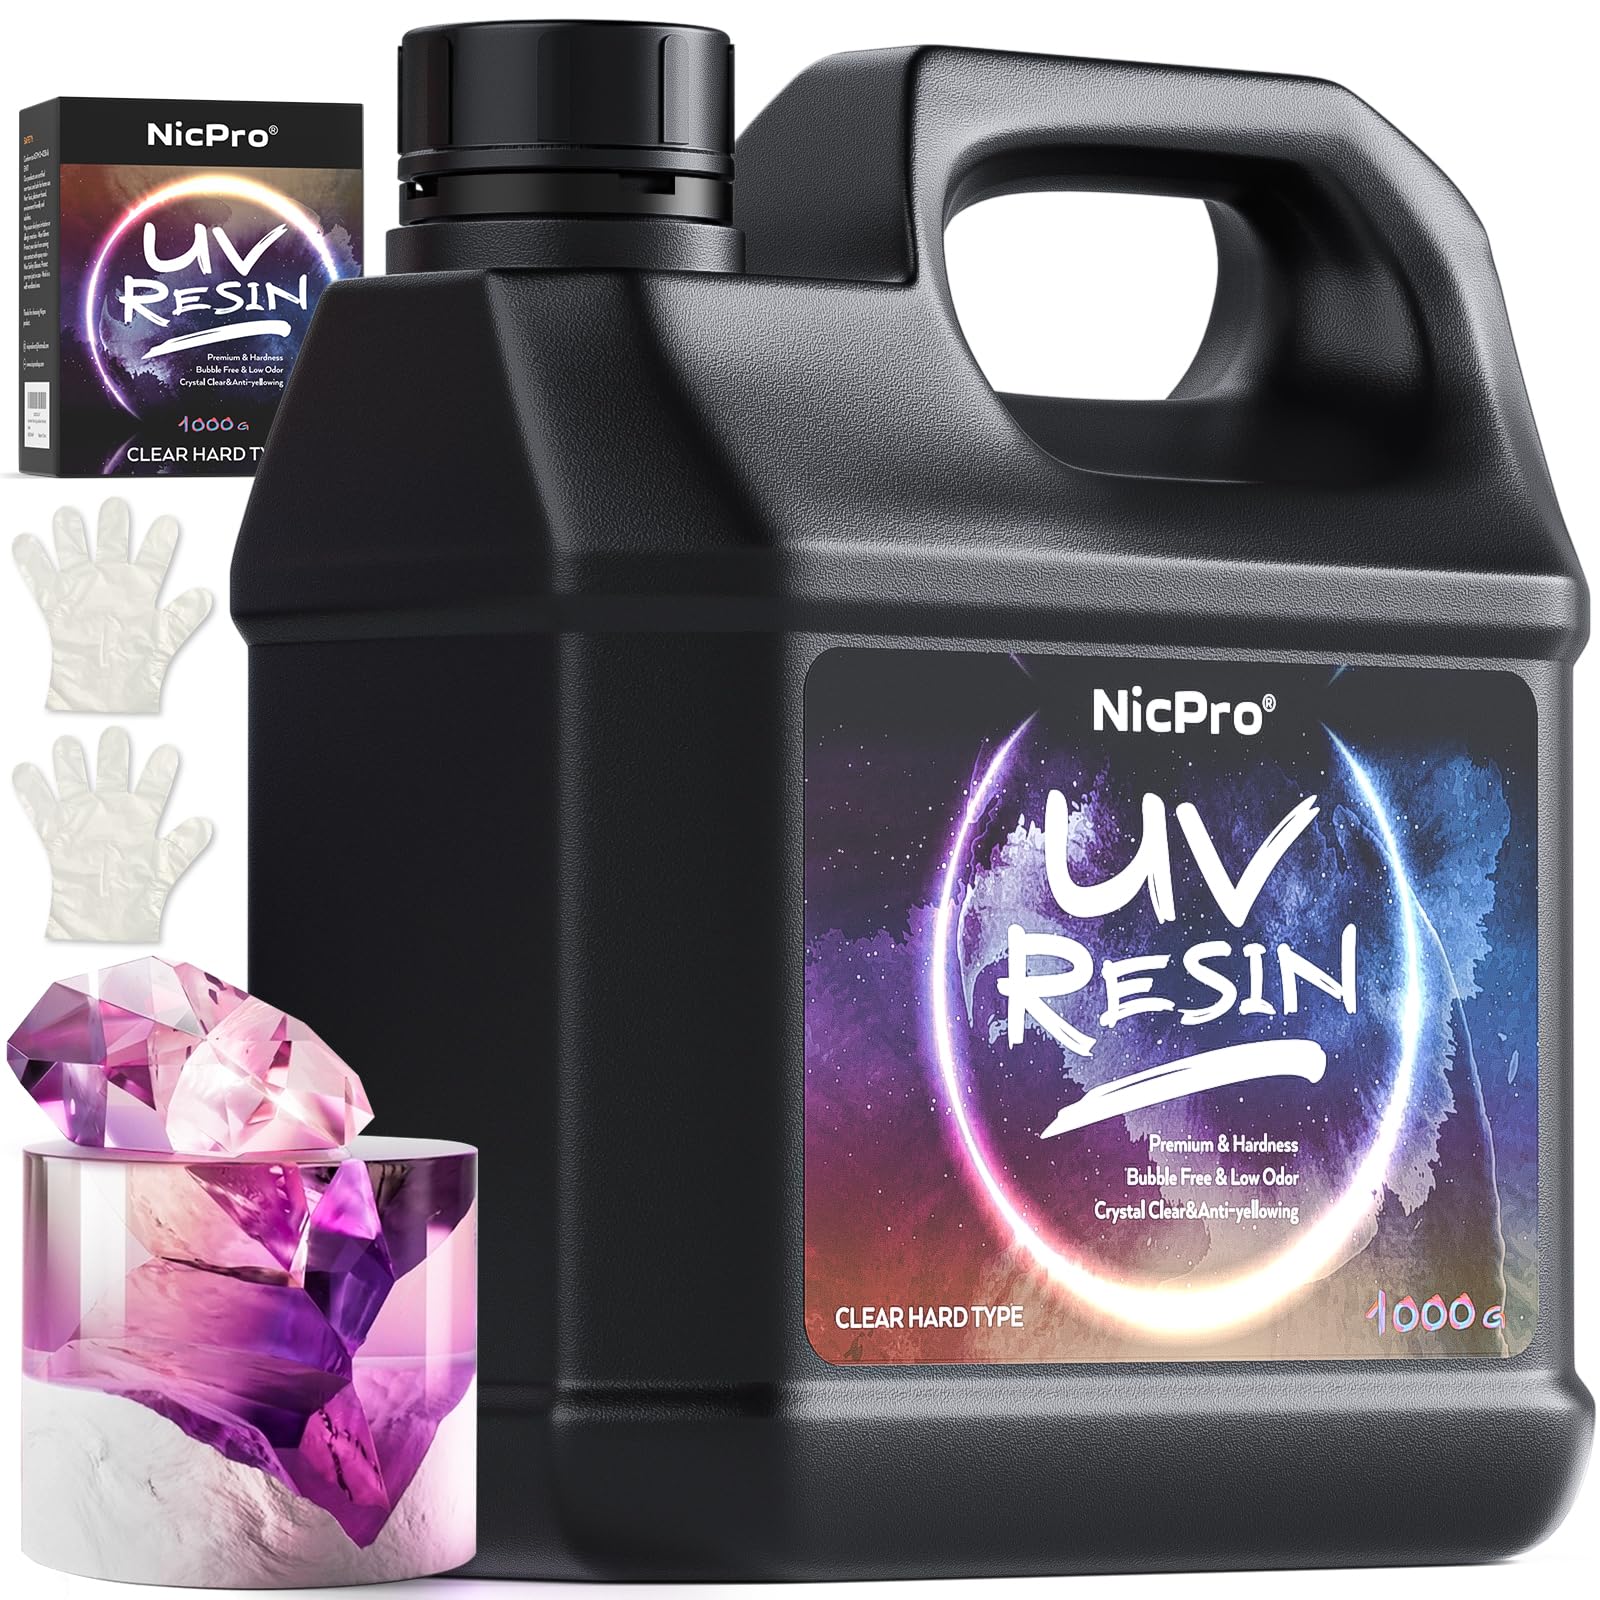 UV Resin VS Epoxy Resin 